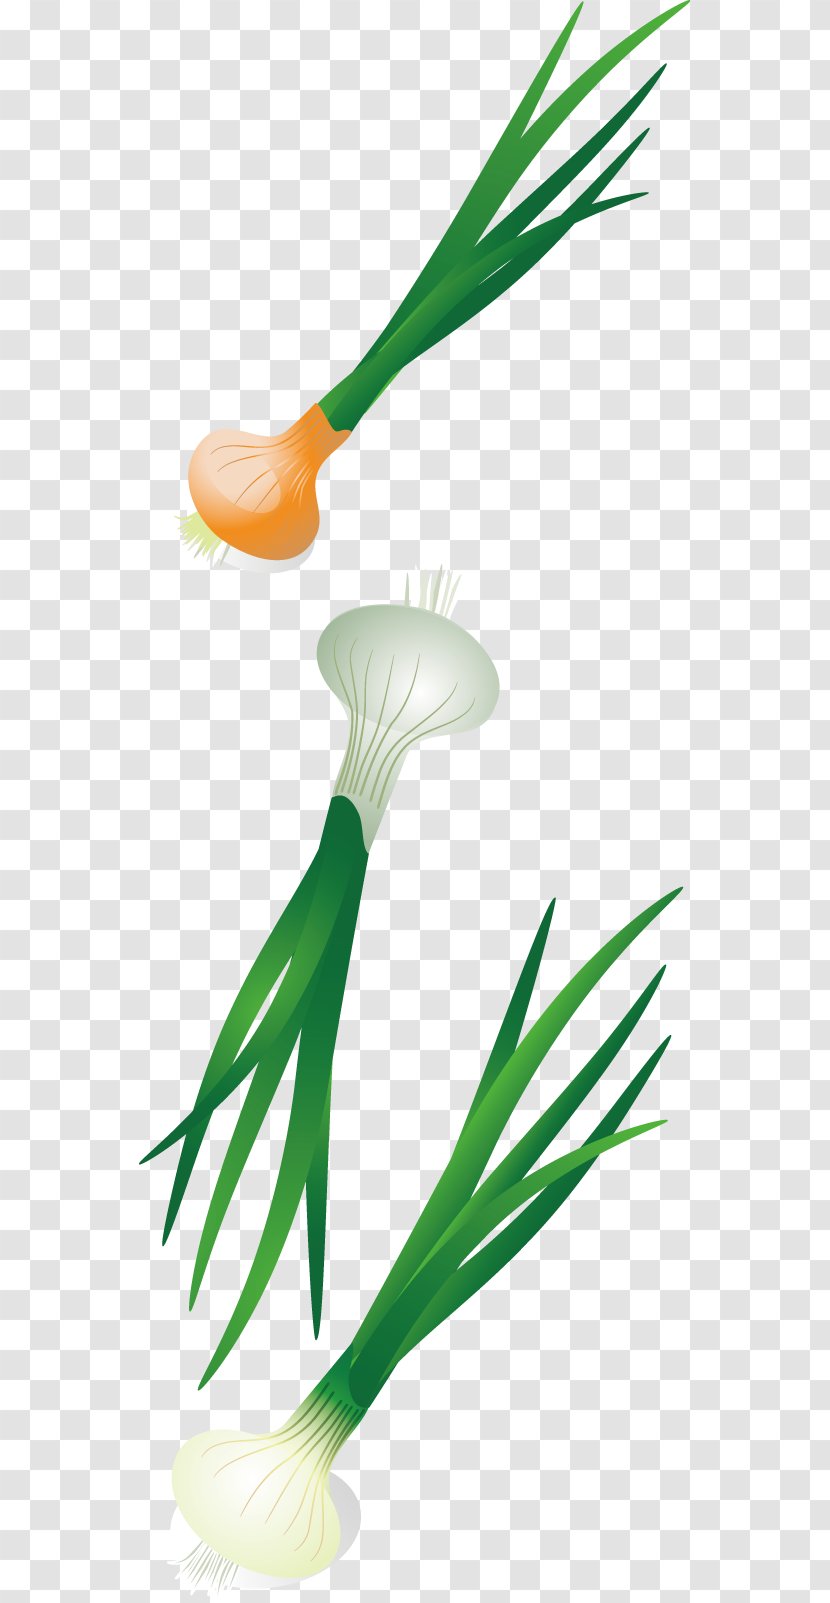 Vegetable Illustration - Flower - Vector Diagram Of A Design Onion Vegetables Transparent PNG